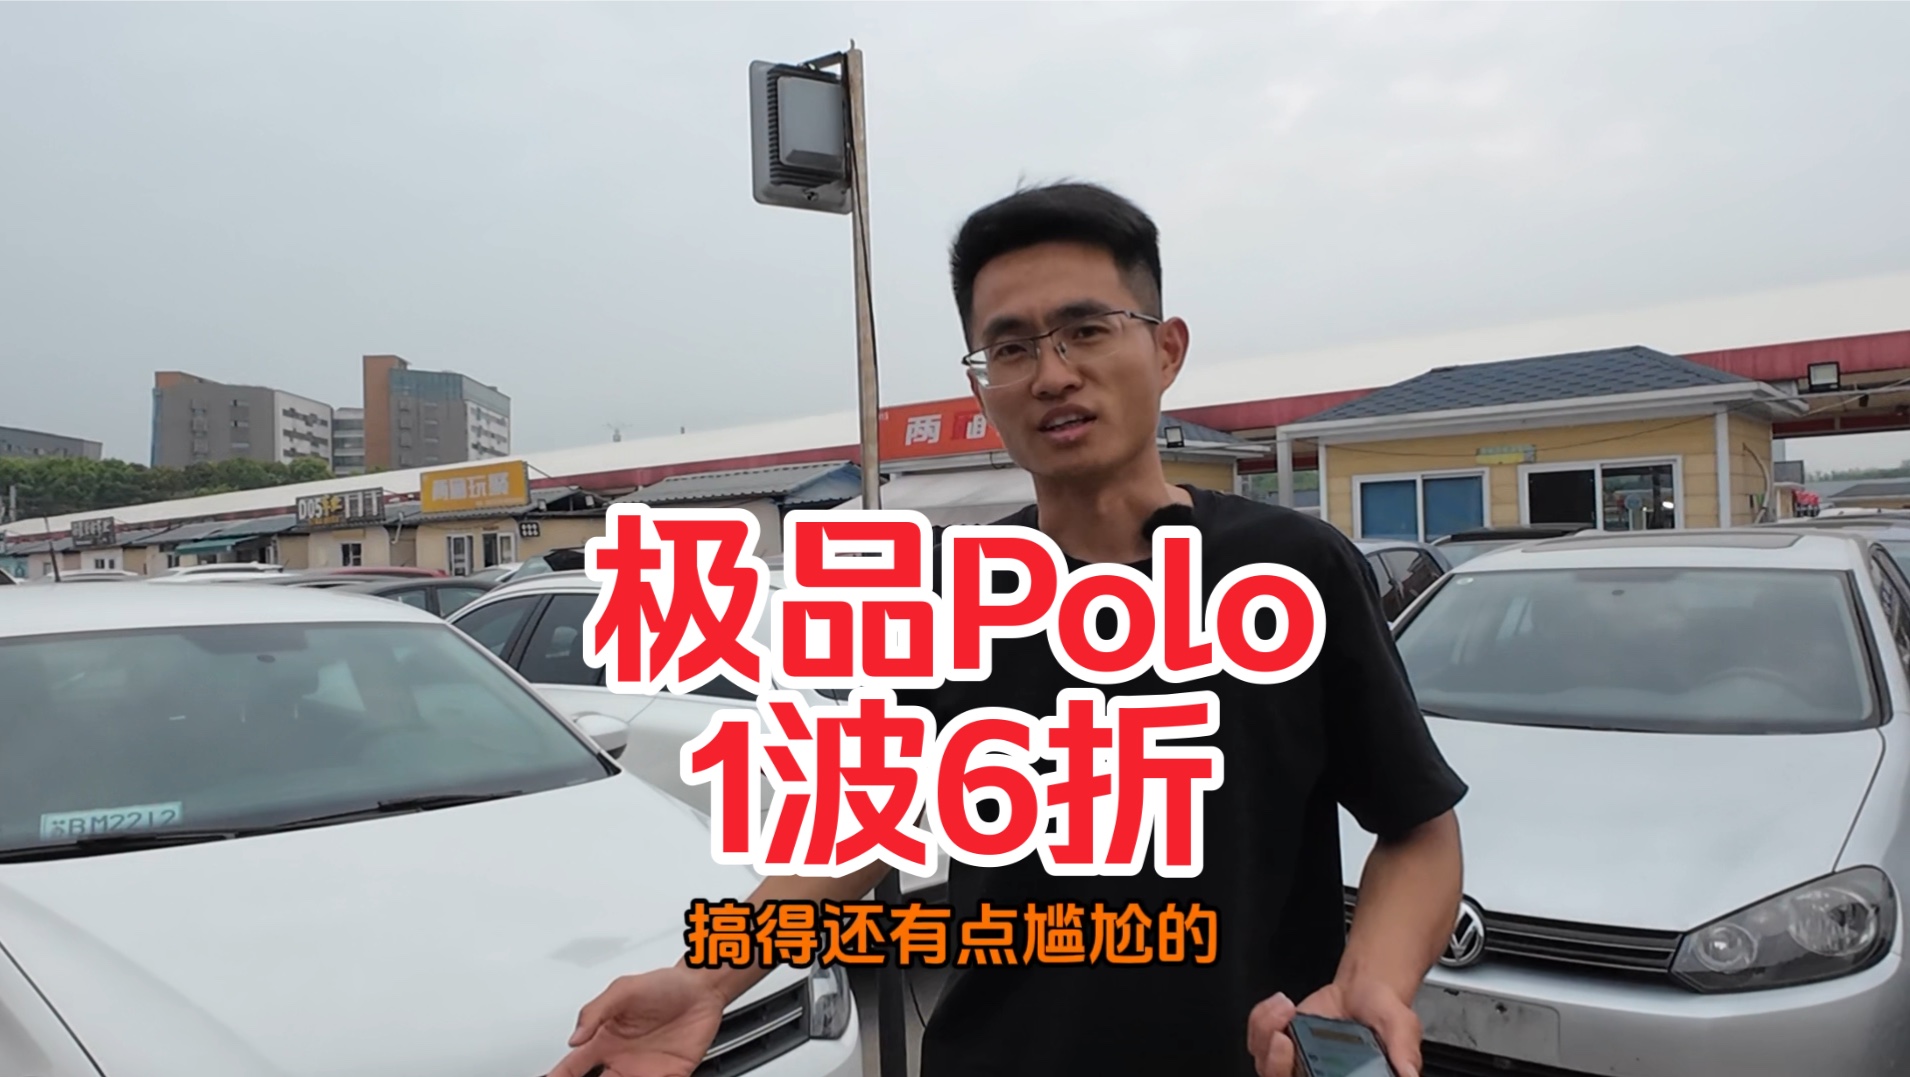 极品Polo、卖了6次，两台自动Polo在路上